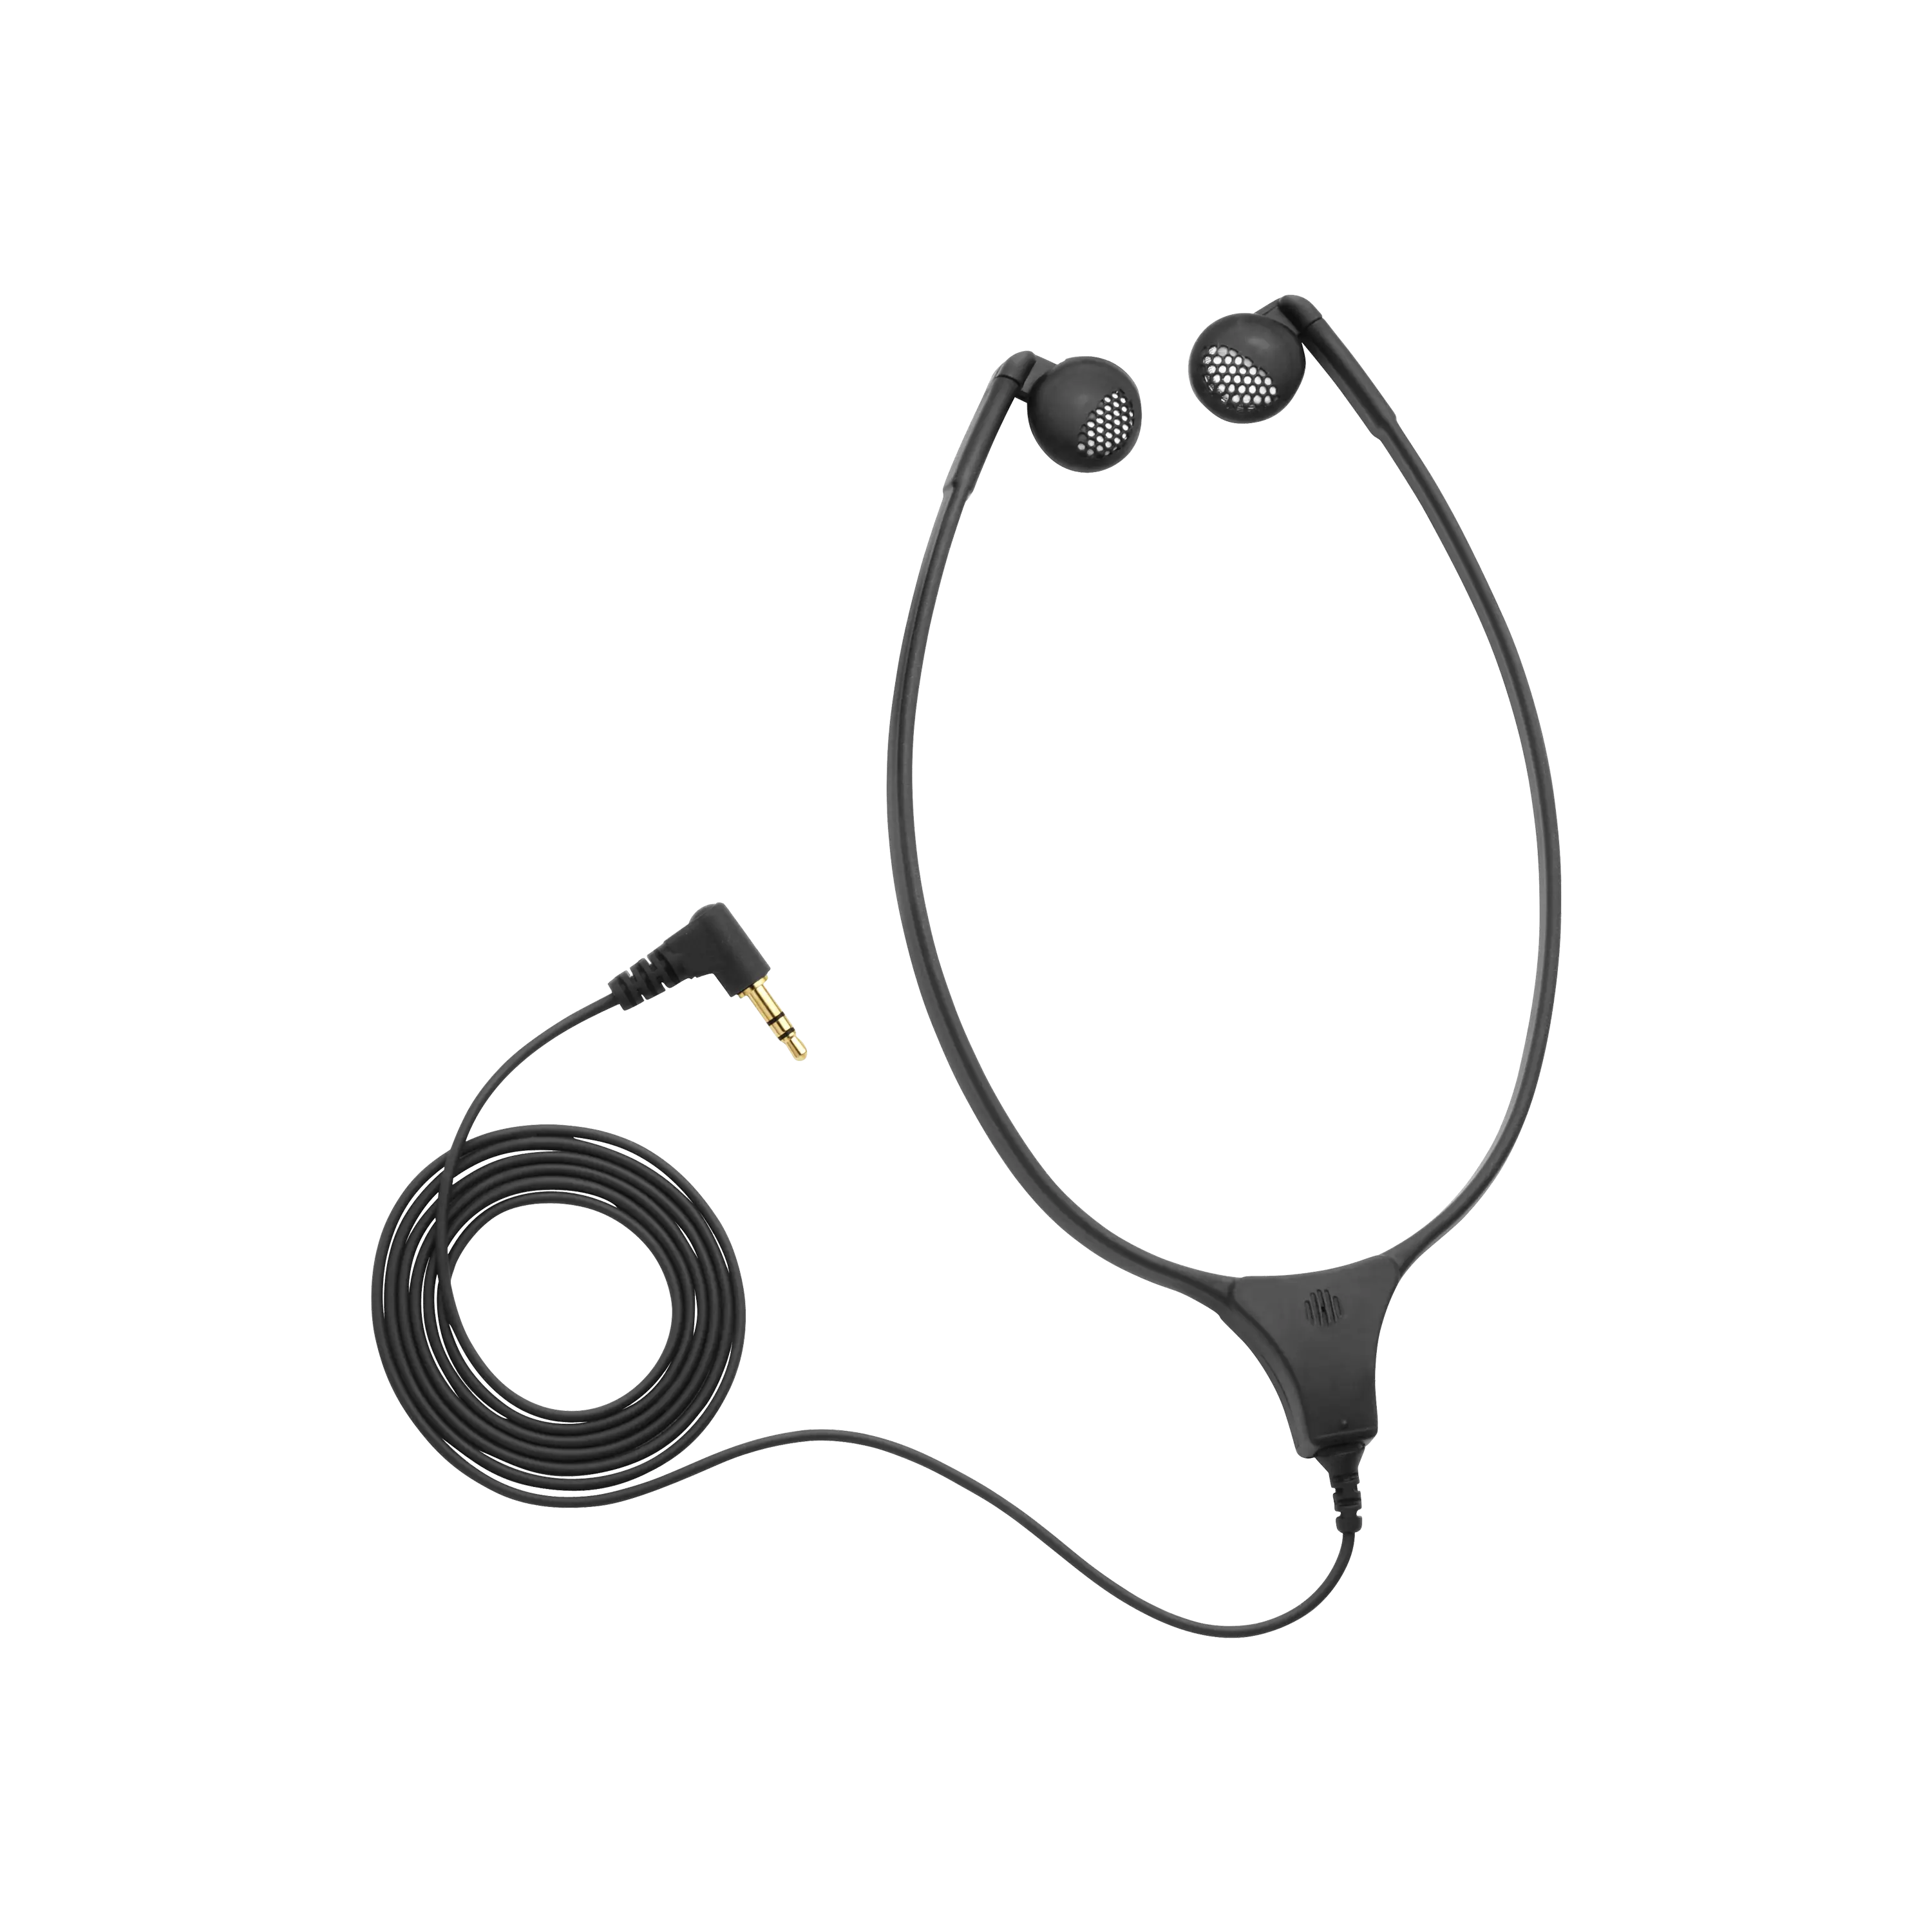 DH 6223 Stethoscope Headphones